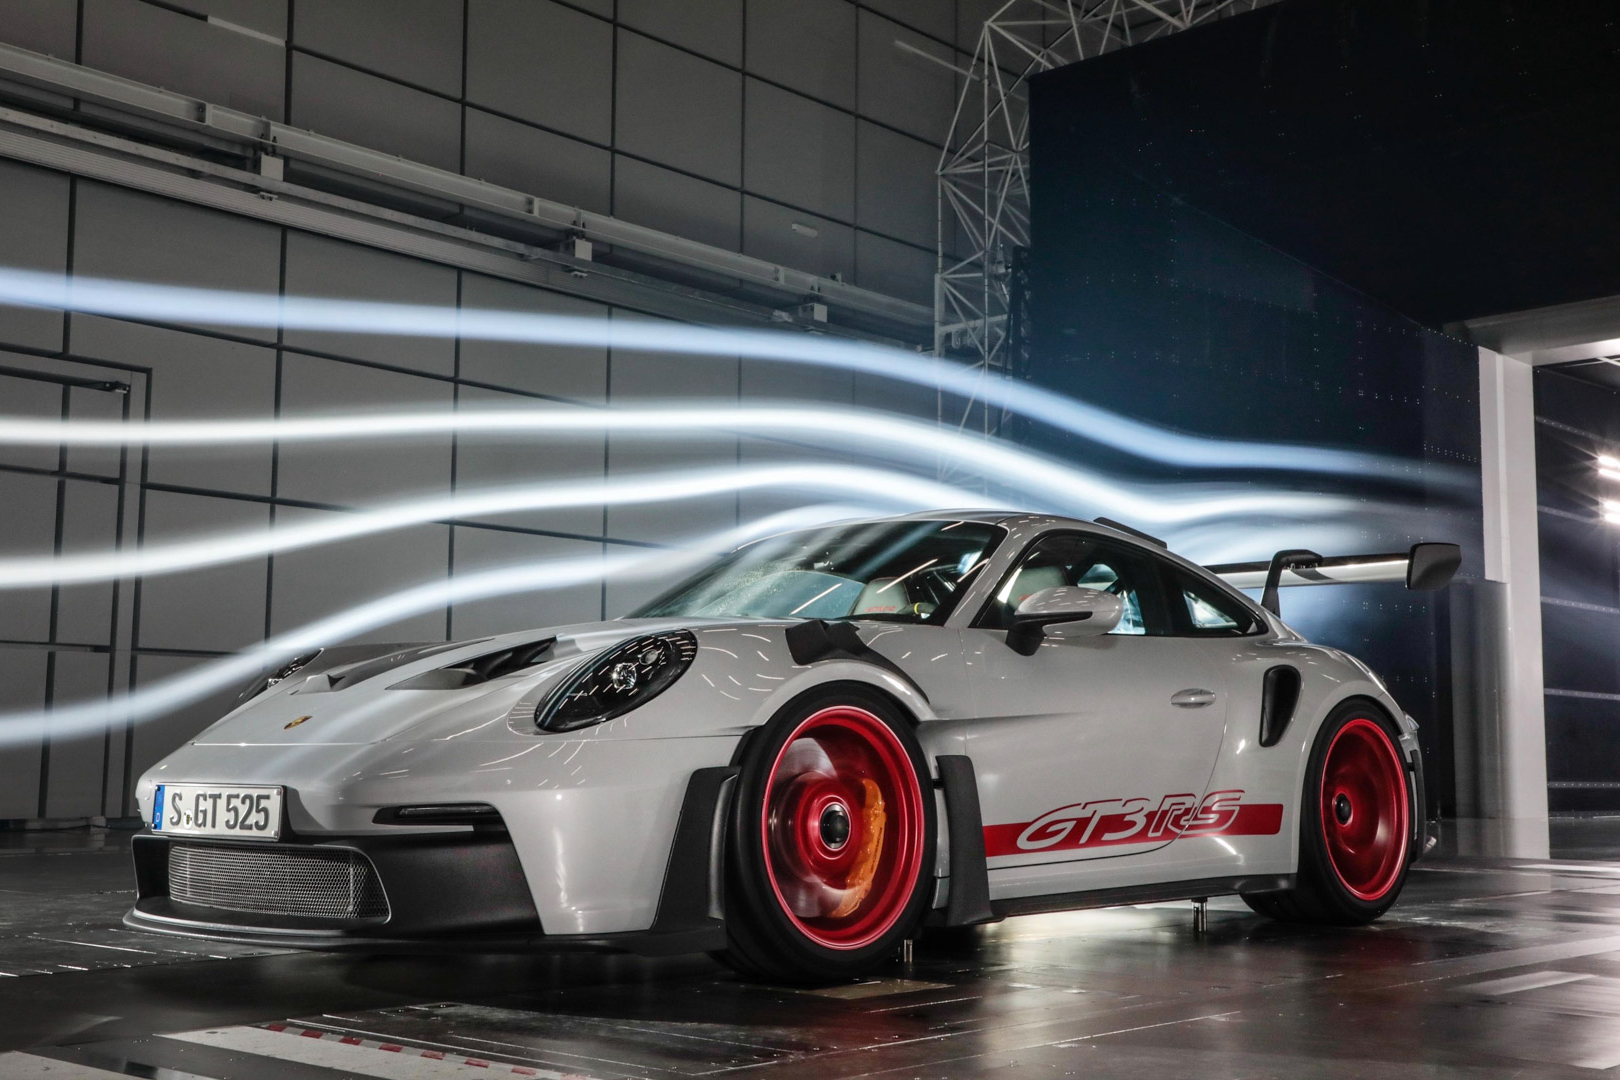 Chi tiết Porsche 911 GT3 RS thế hệ mới - ảnh 10